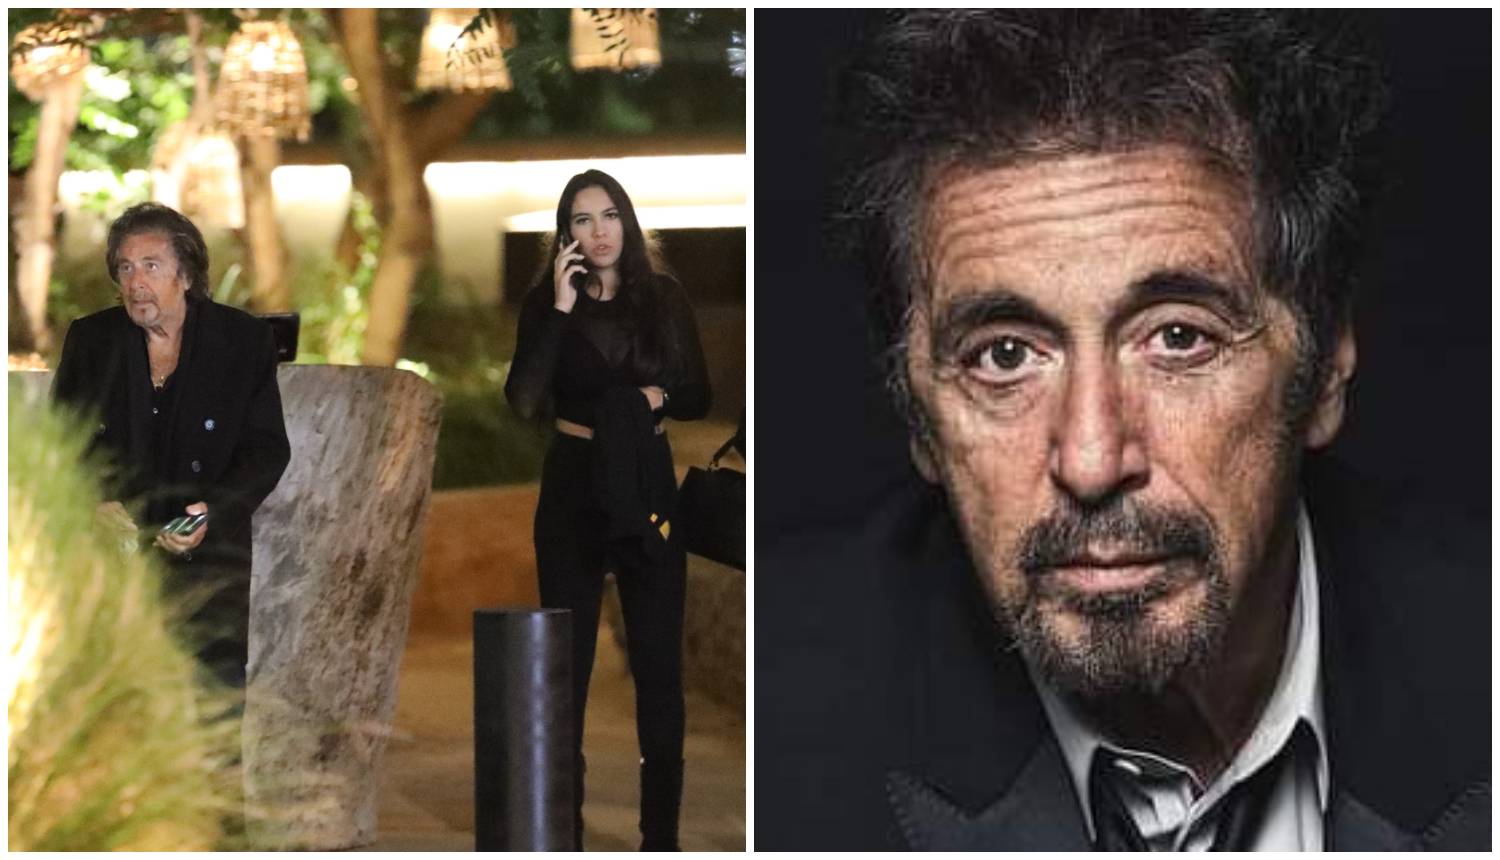 Al Pacino slavi 83. rođendan: Trenutno ljubi 54 godine mlađu koja je bila s Clintom i Jaggerom